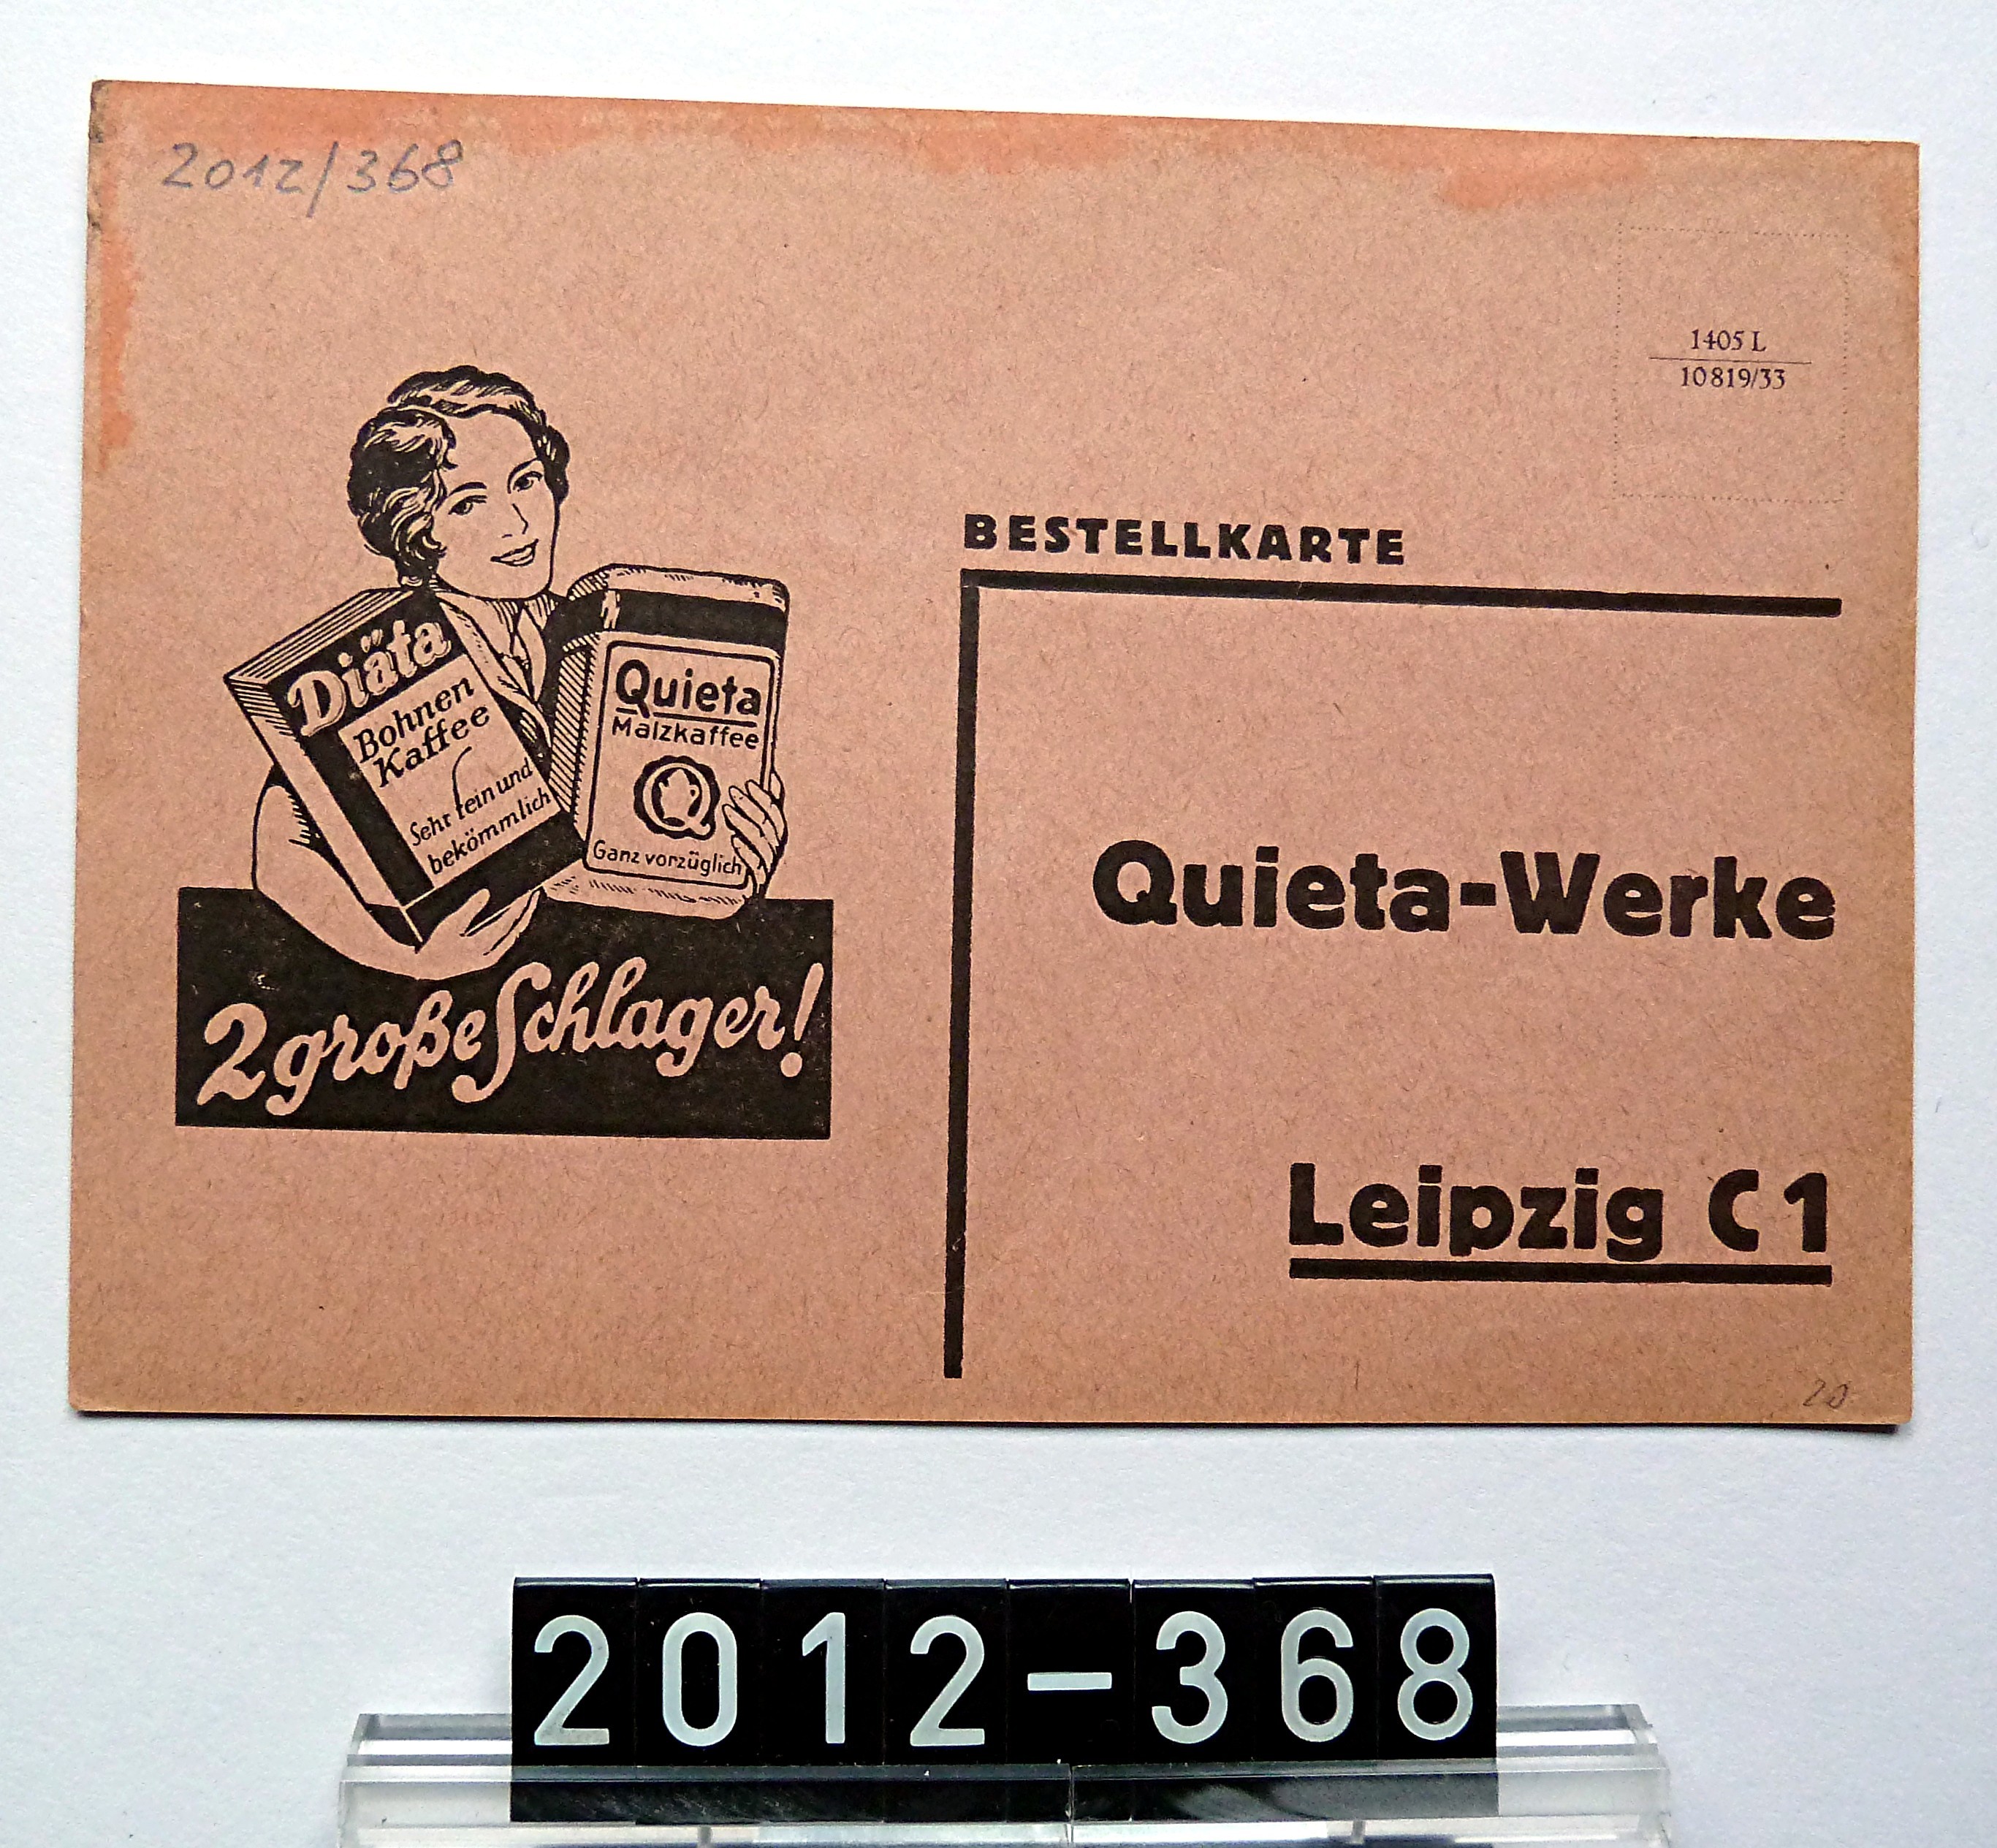 Bestellkarte der Quieta-Werke Leipzig; 20. Jh. (Stadtmuseum Bad Dürkheim, Museumsgesellschaft Bad Dürkheim e.V. CC BY-NC-SA)